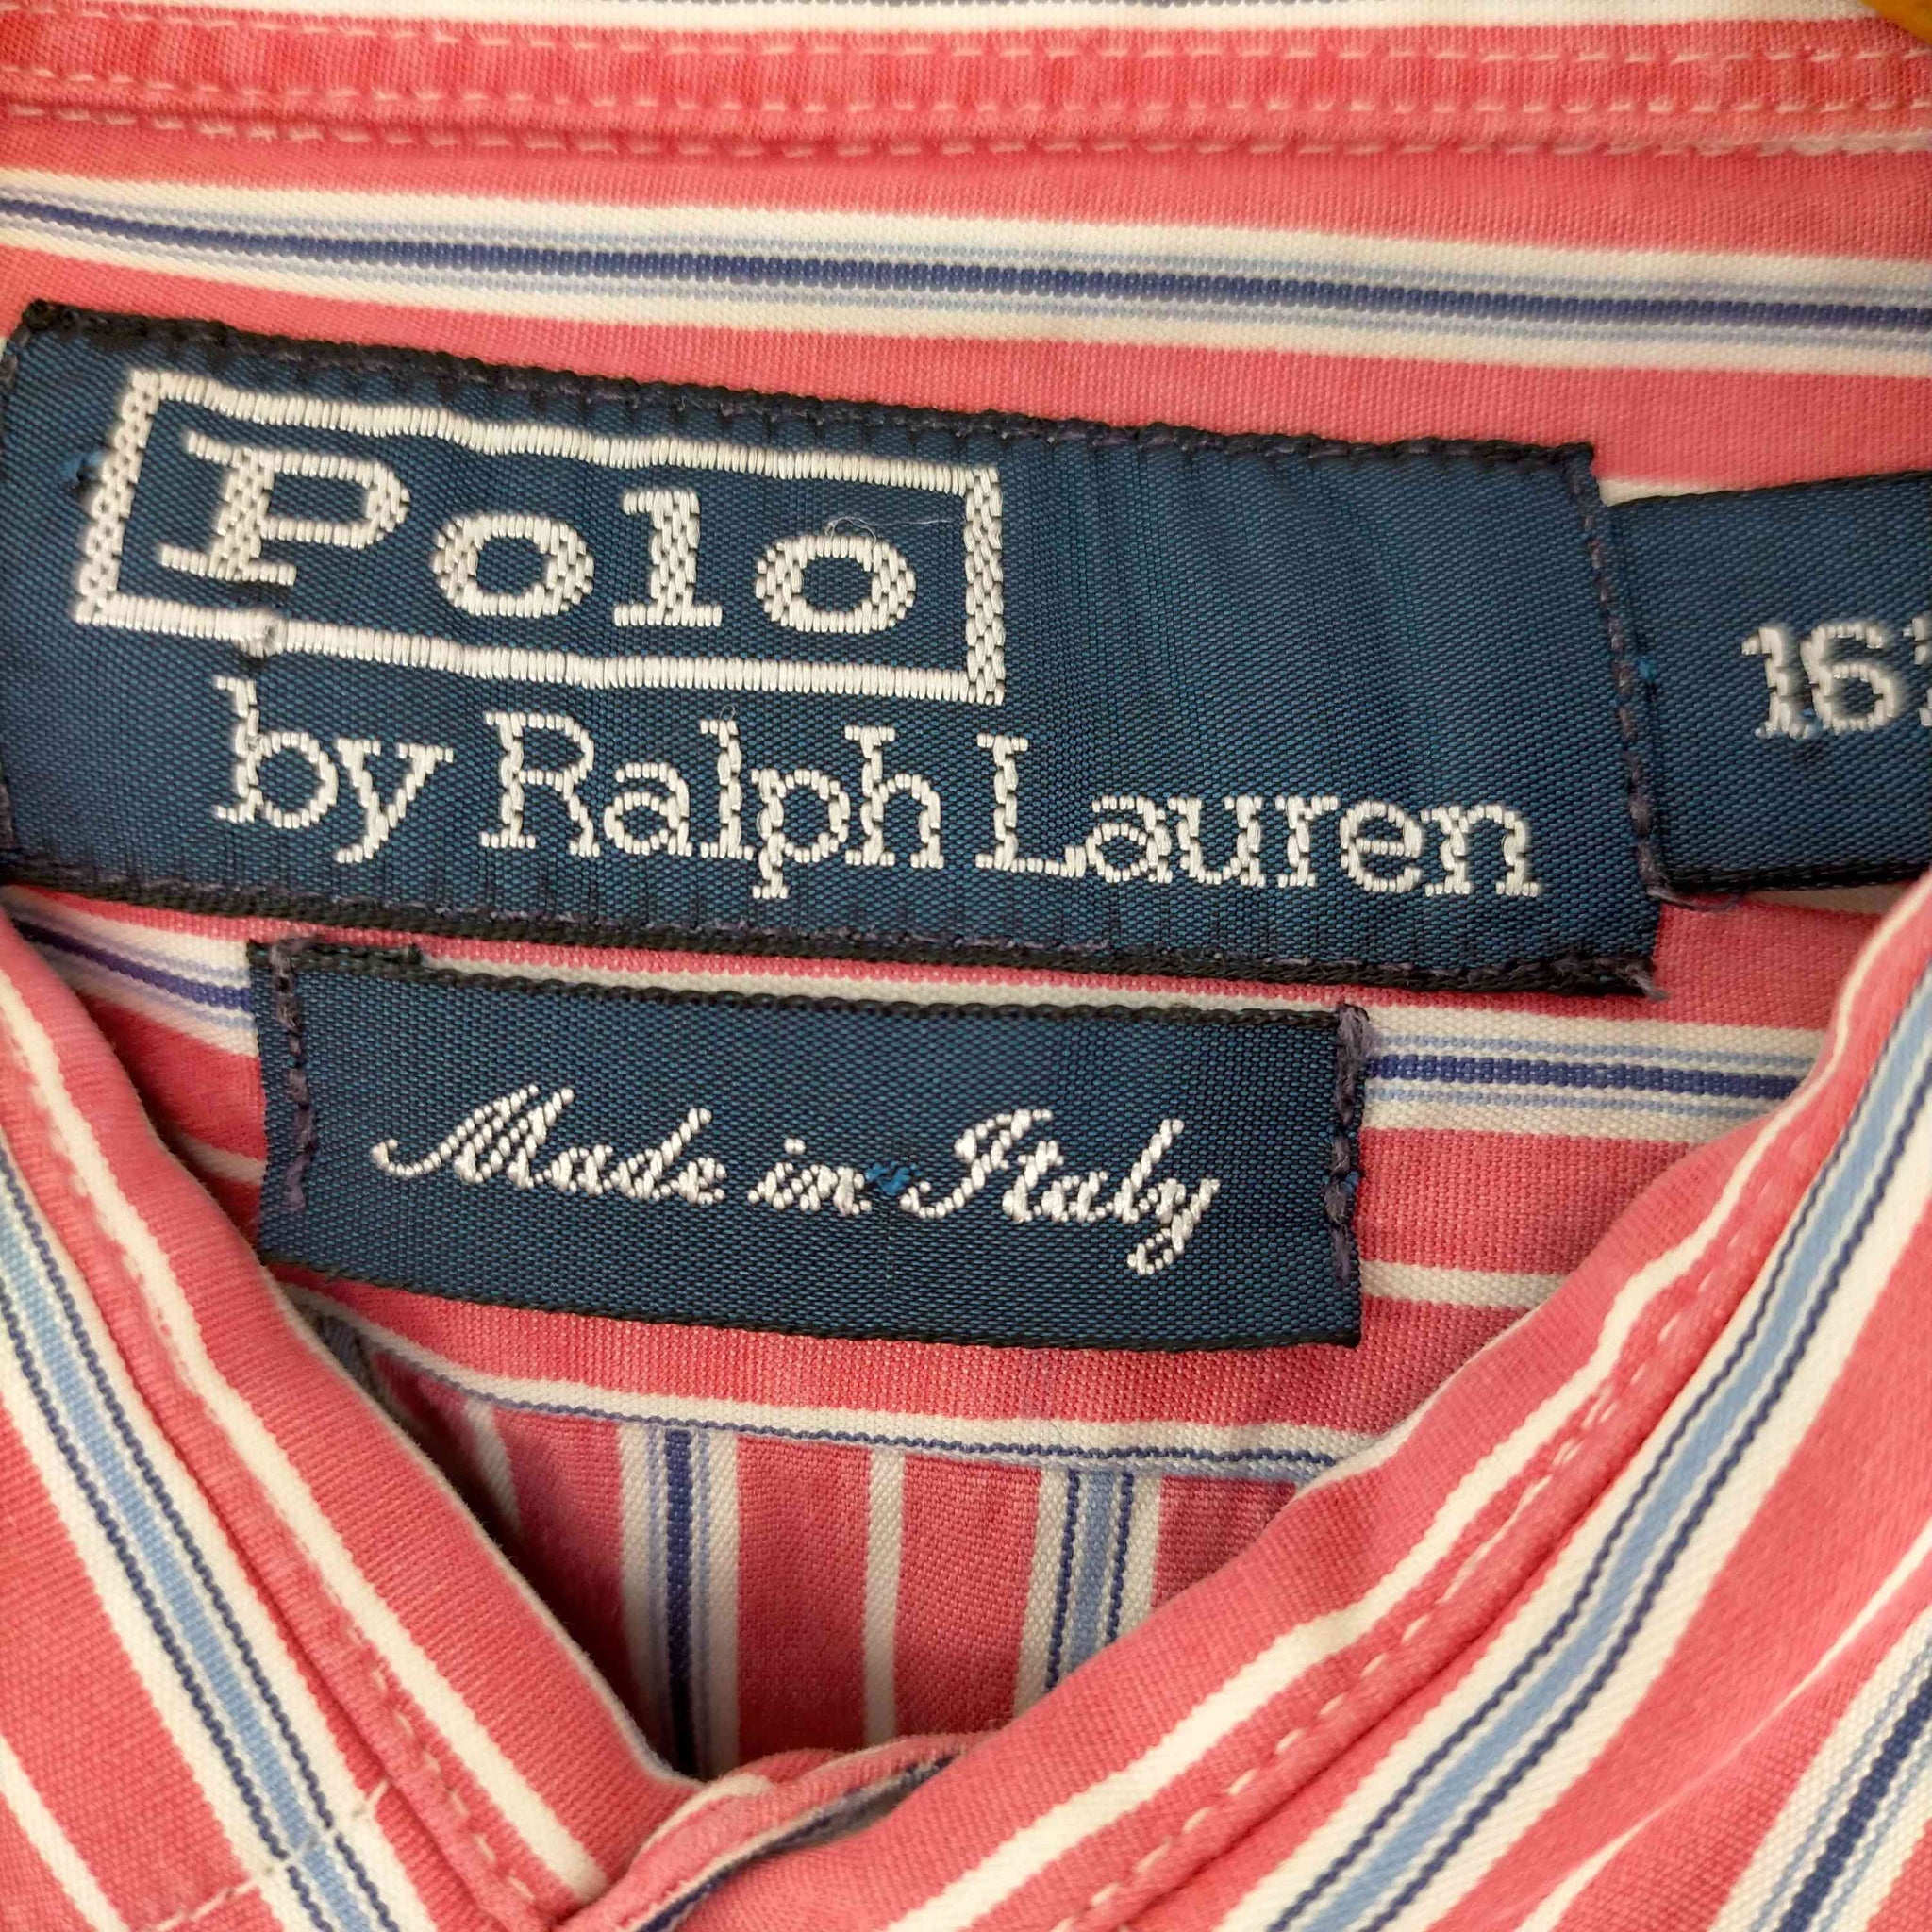 Polo by RALPH LAUREN(ポロバイラルフローレン)90s イタリア製 ストライプシャツ